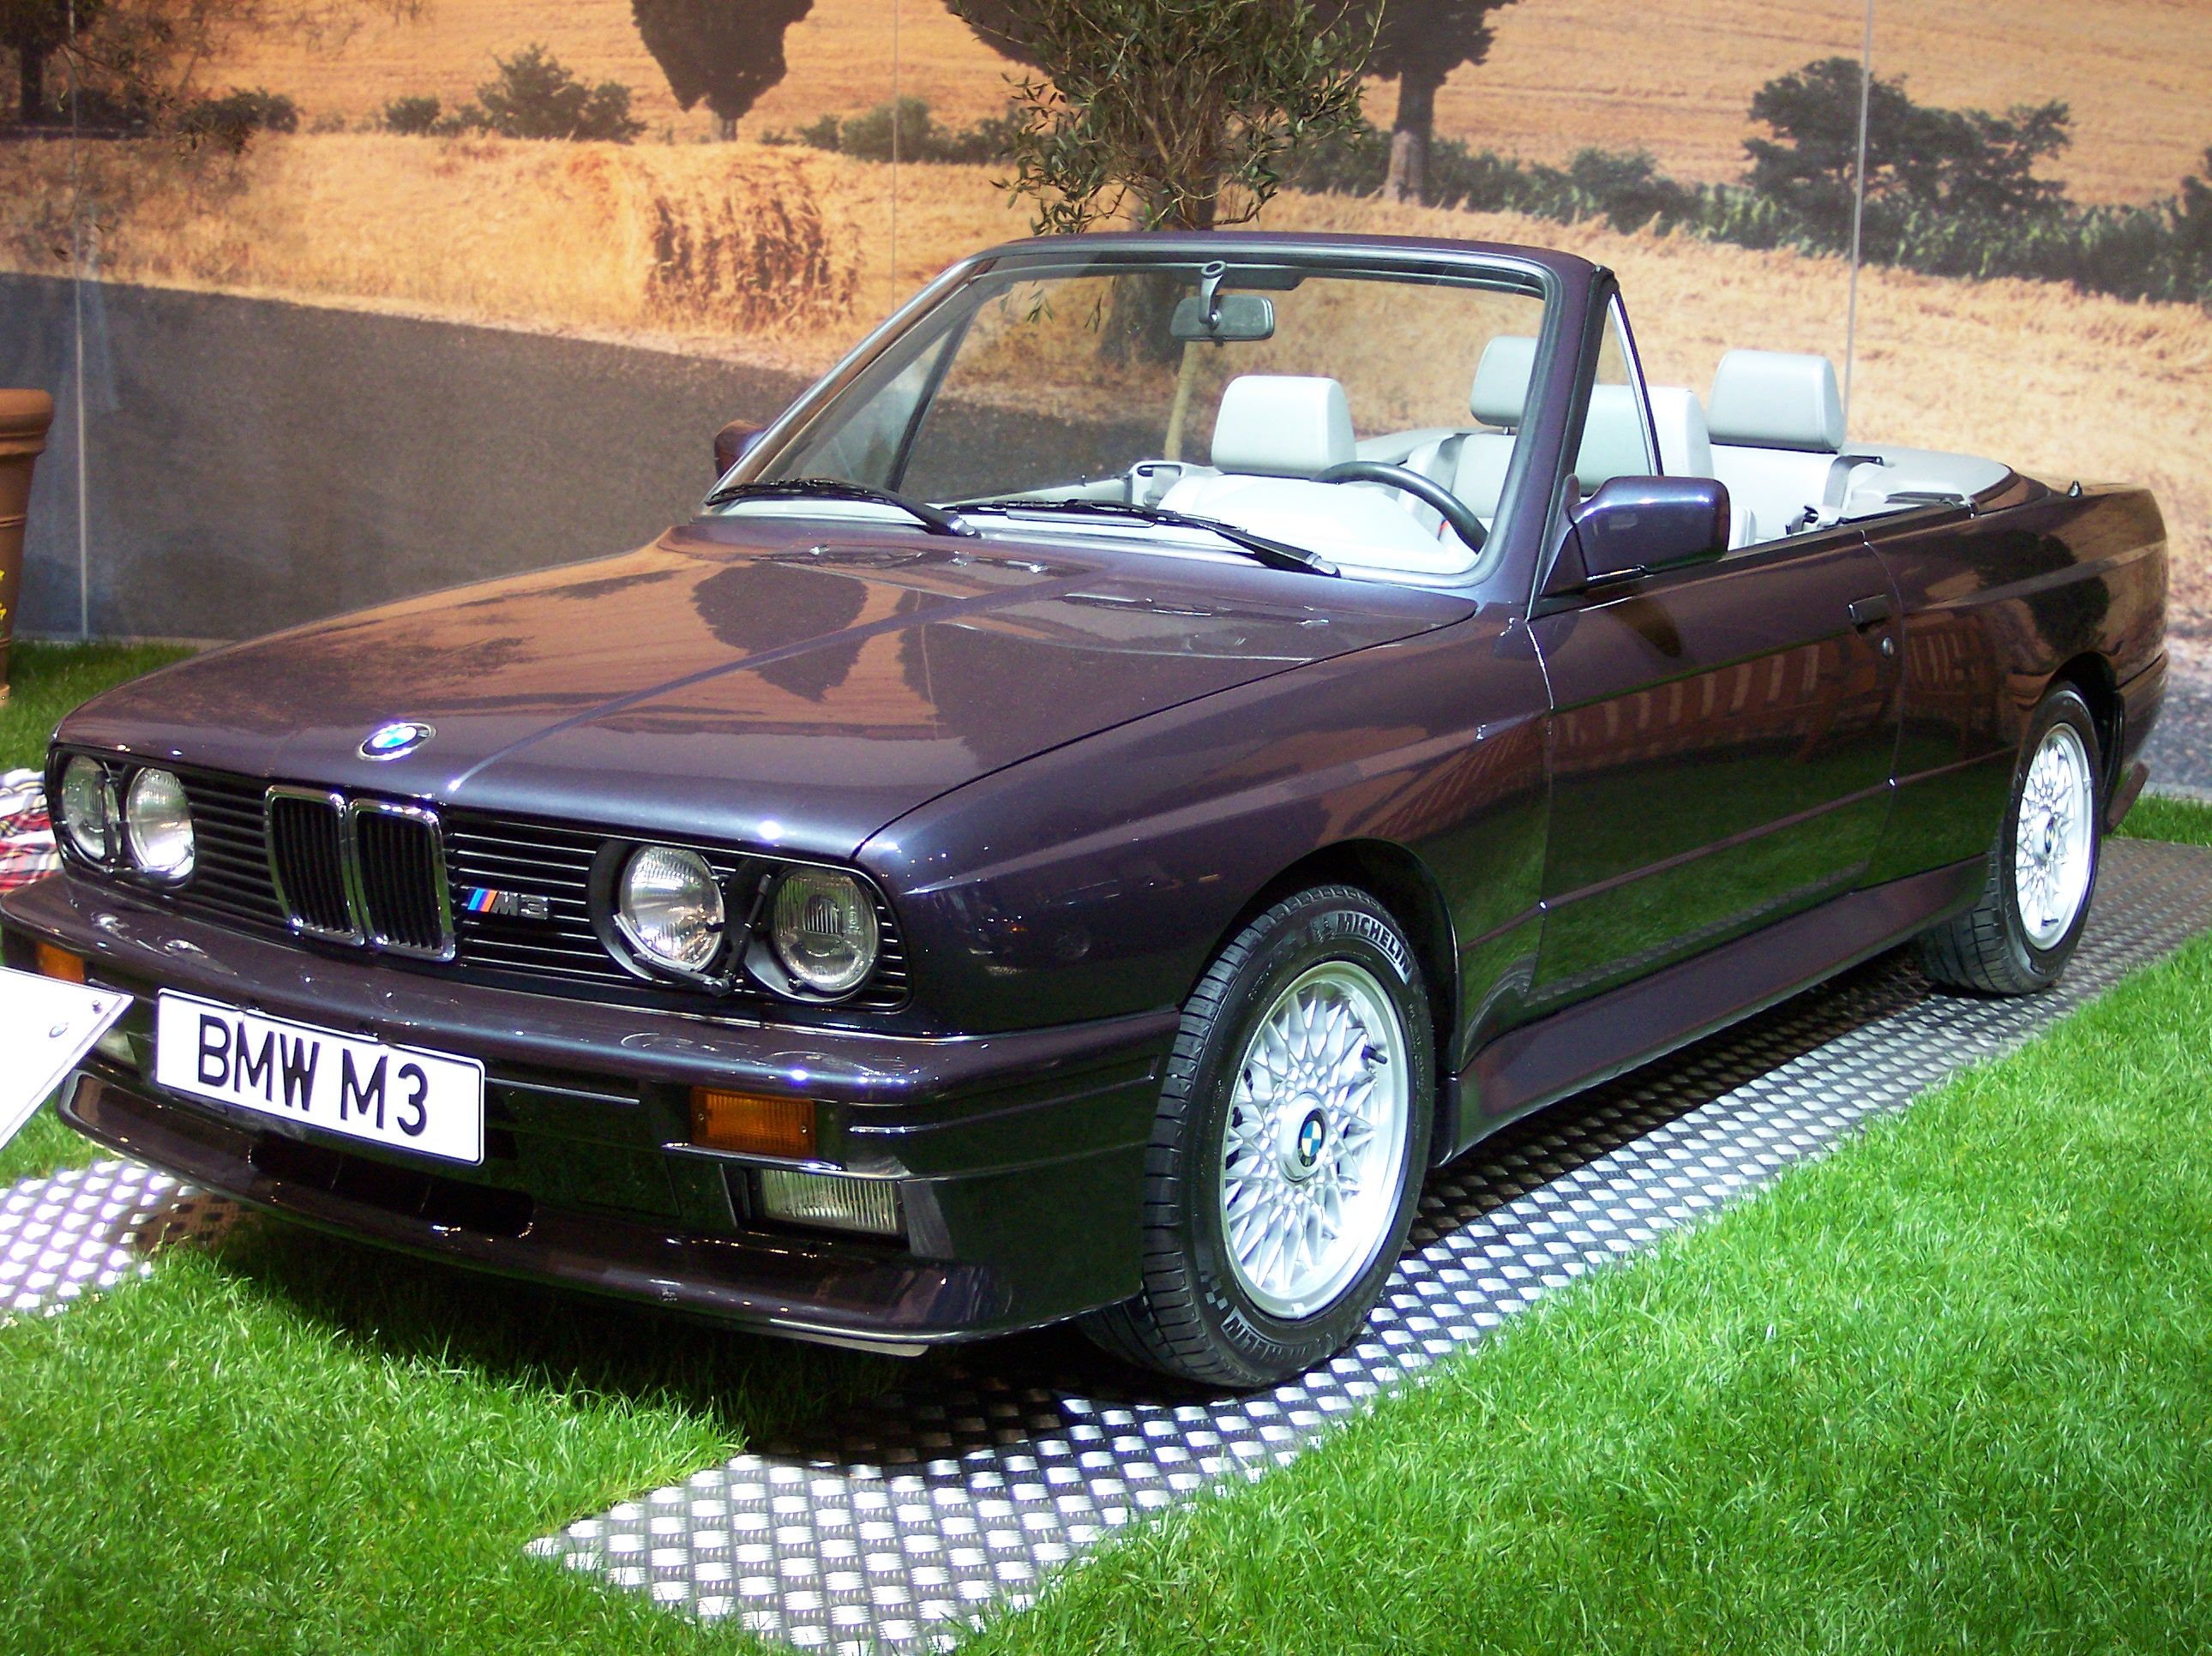 BMW_M3_Cabrio_1991_purble_vl_TCE.jpg